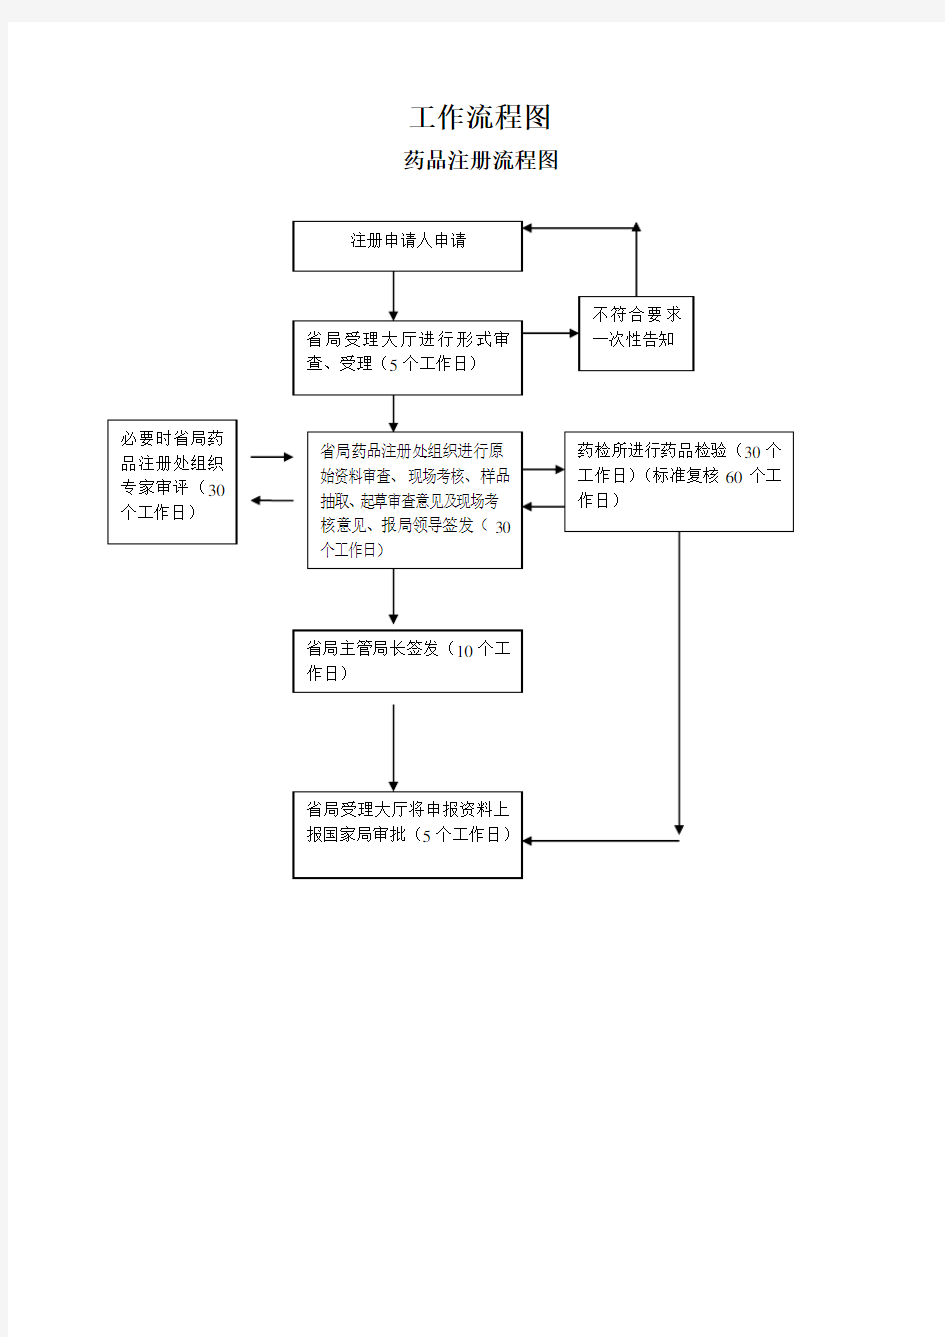 中国药品注册流程图